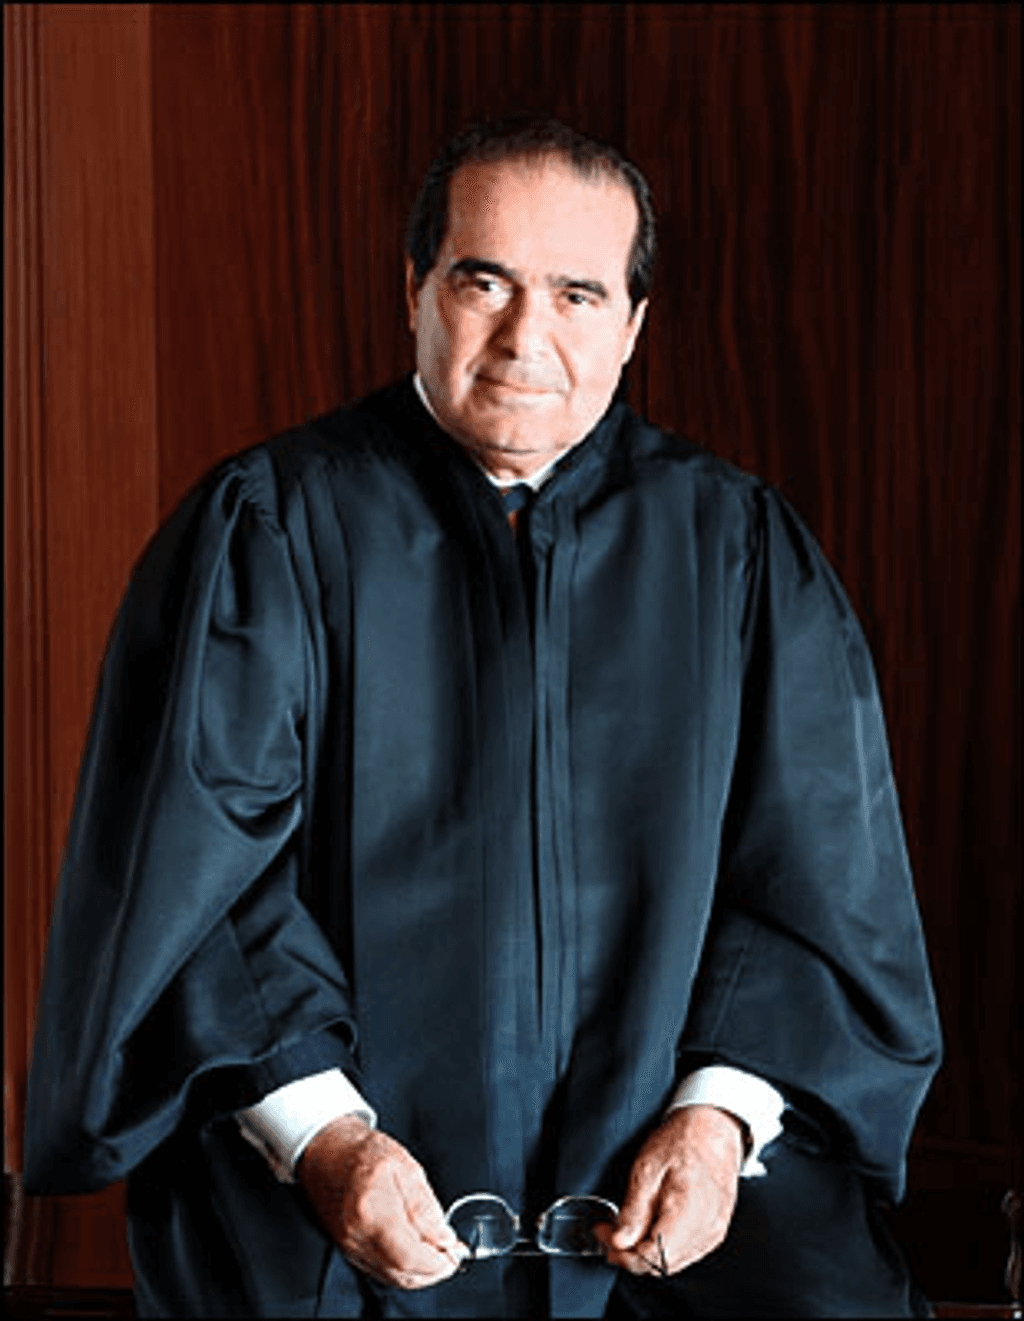 Associate Justice Antonin Scalia (1937-2016)